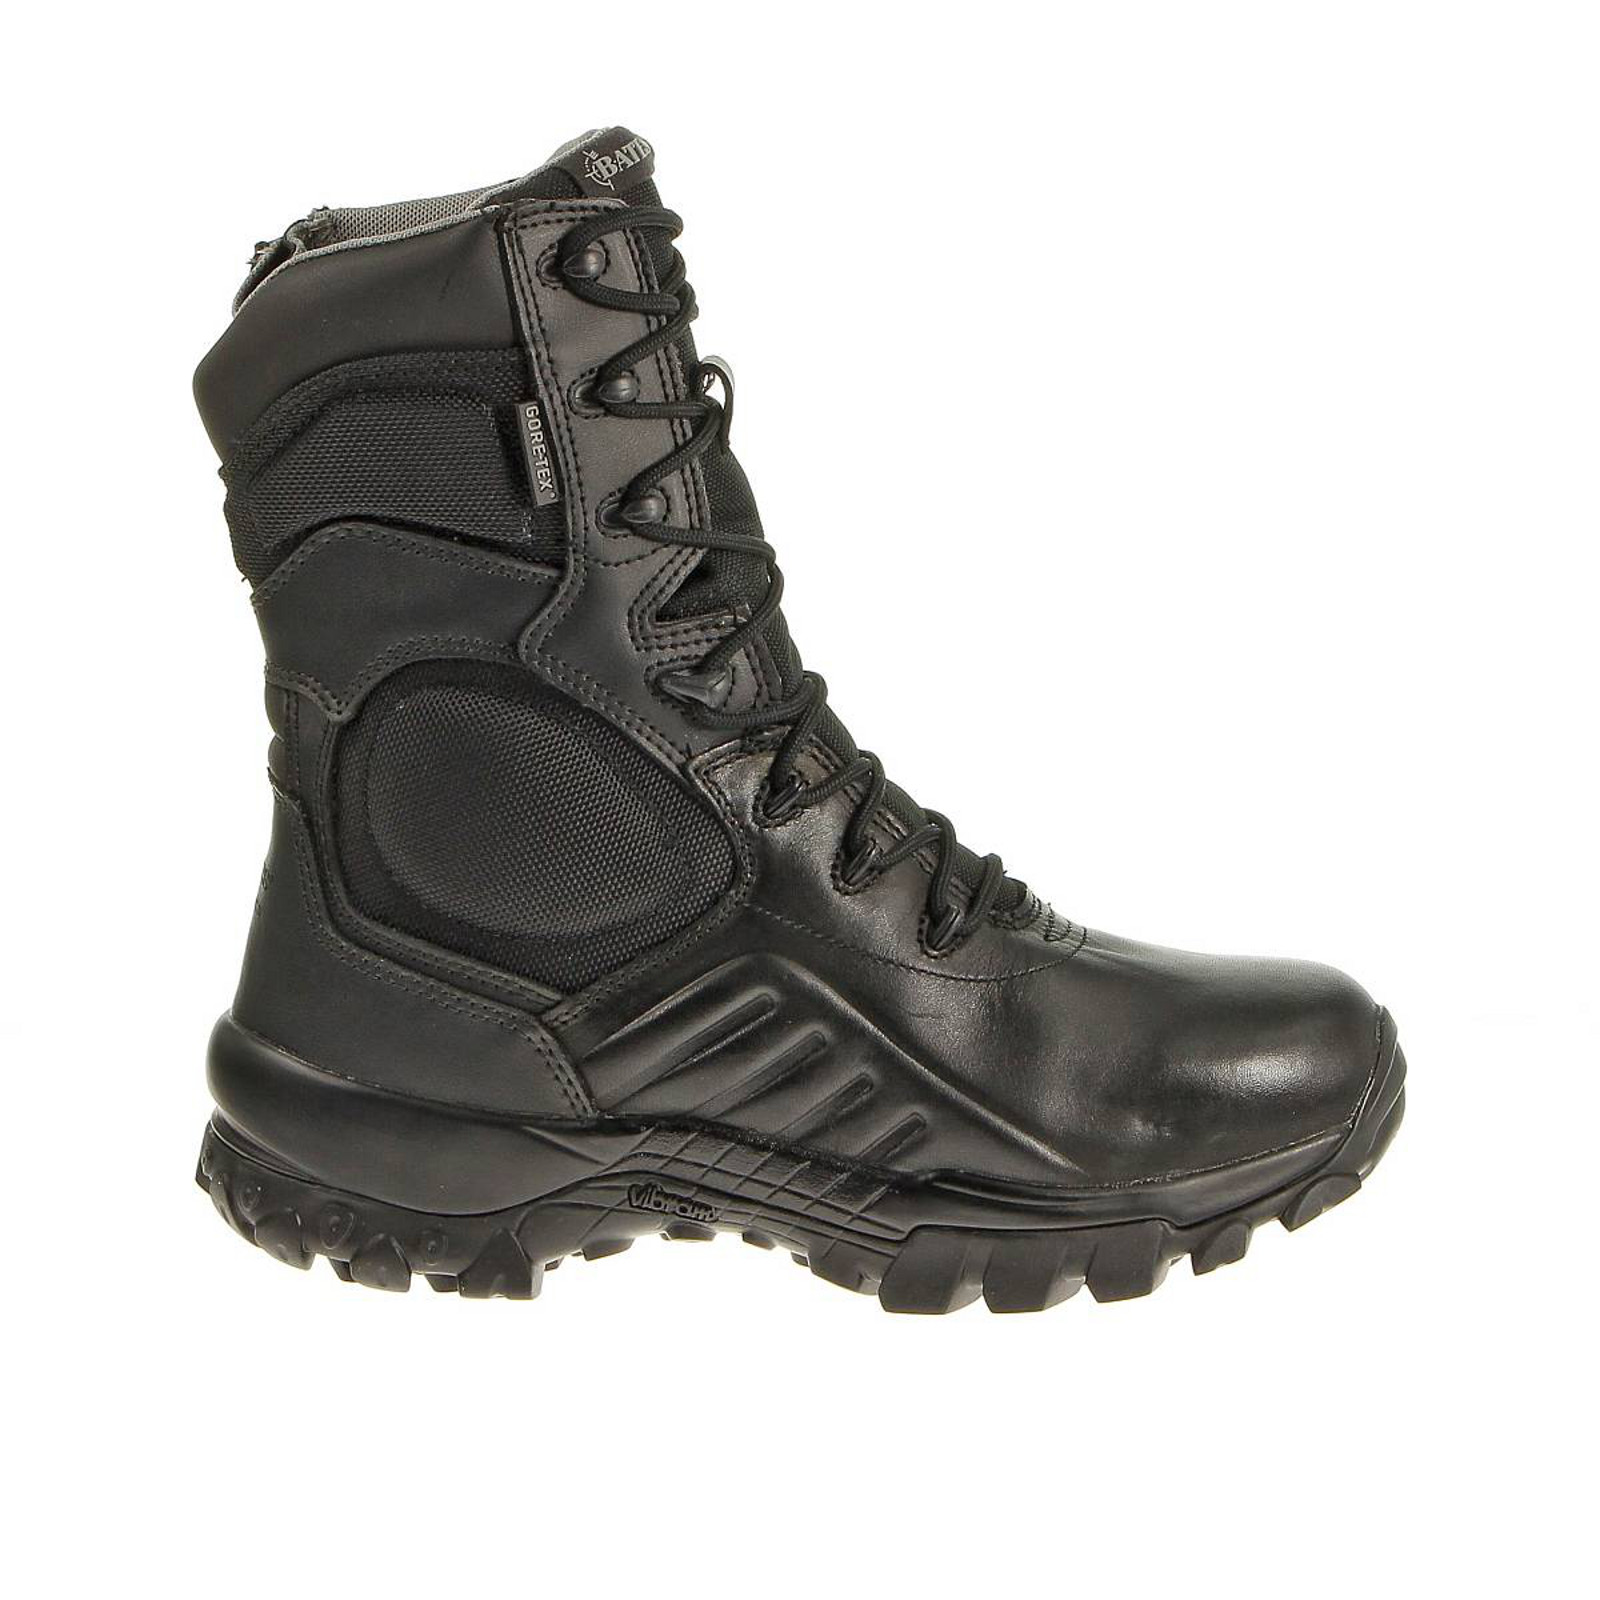 Bates Men's Delta-9 Gore-Tex Black Side Zip Tactical Work Boots - Wide Width